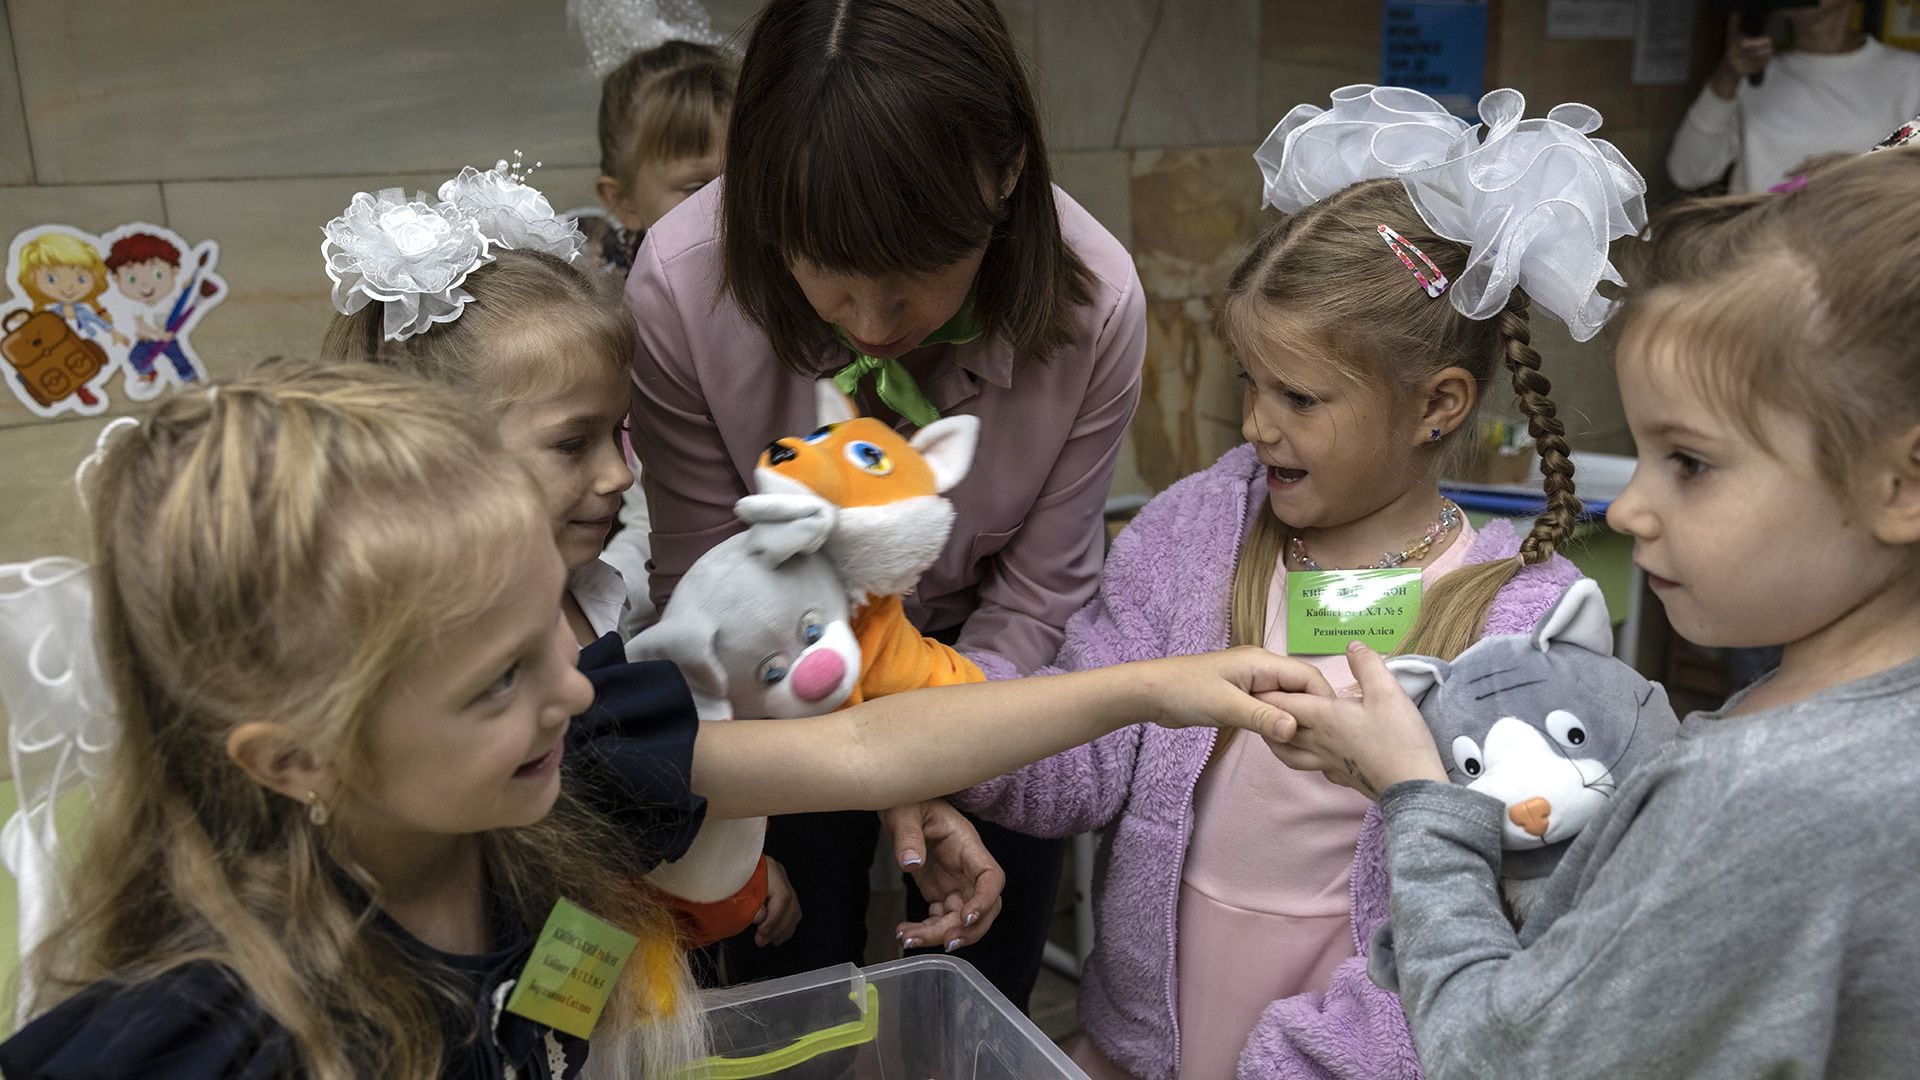 Alumnos de primer grado juegan con marionetas en un aula durante el primer día de clase celebrado en la estación de metro subterránea de Kharkiv, Ucrania, el lunes (Fotografía de Heidi Levine para The Washington Post)